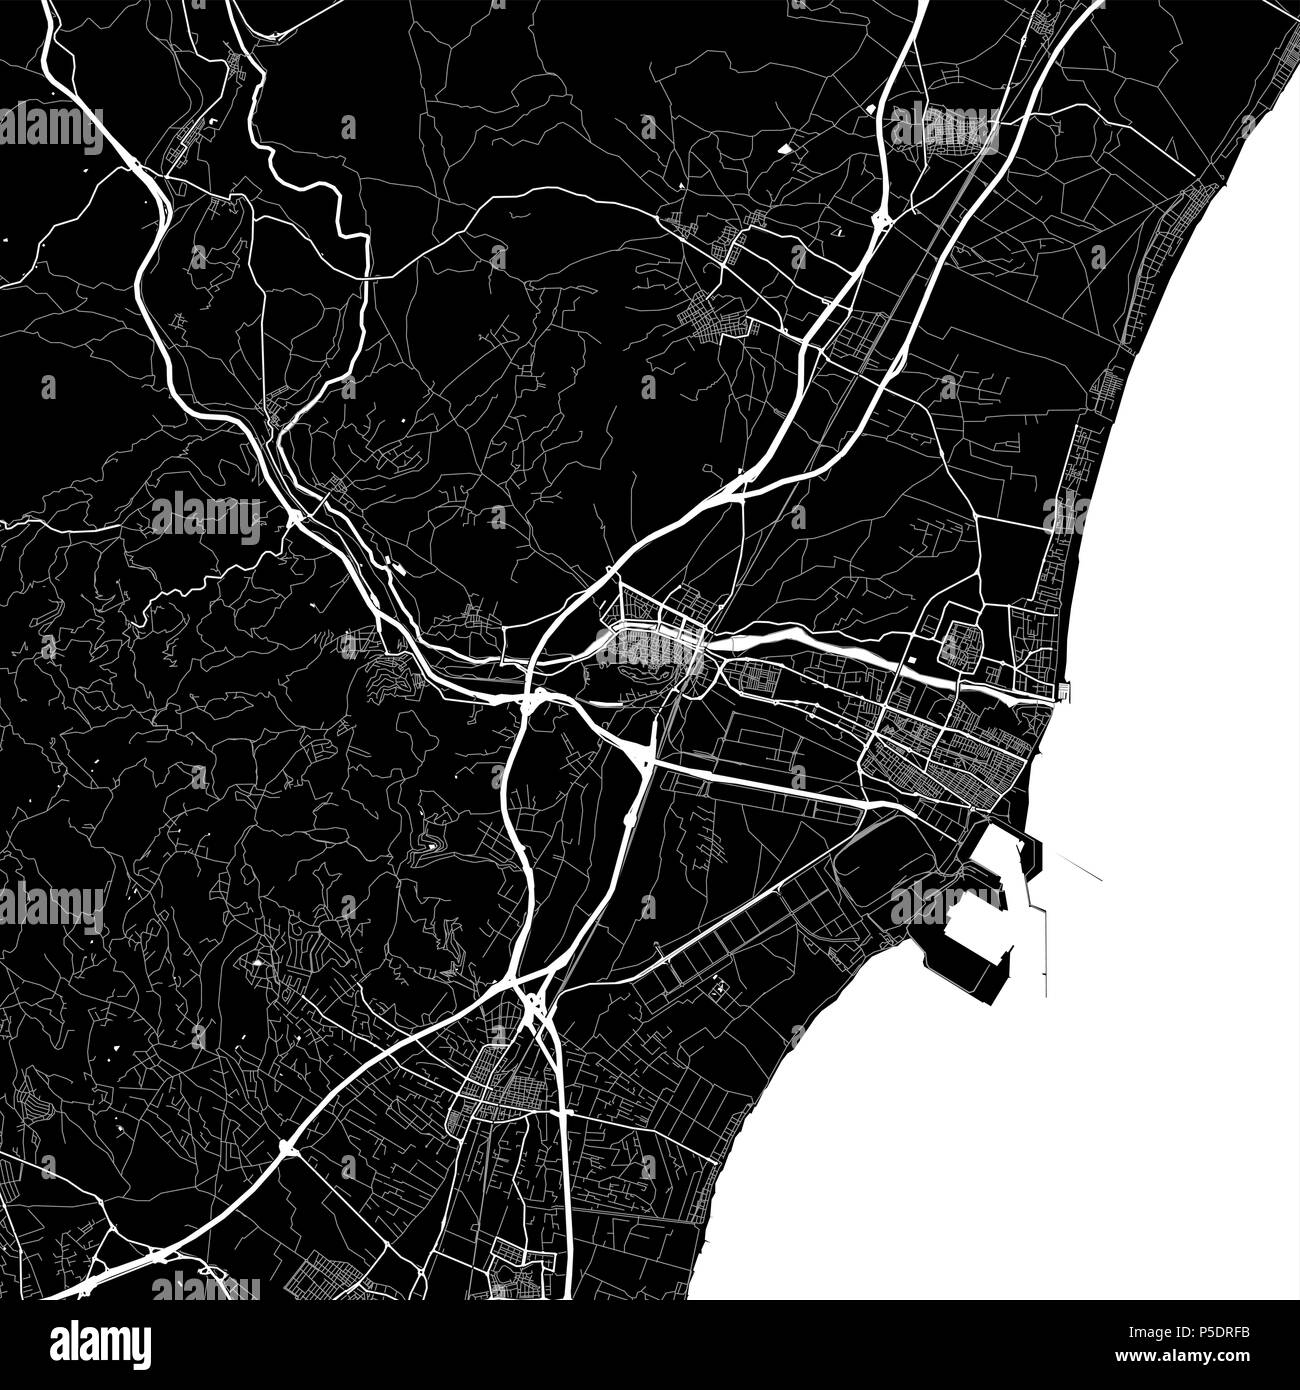 Carte de la région de Sagunto, Valence, Espagne. Fond sombre version pour l'infographie et des projets de marketing. Cette carte de Sagunto, Valence typique contient l Banque D'Images